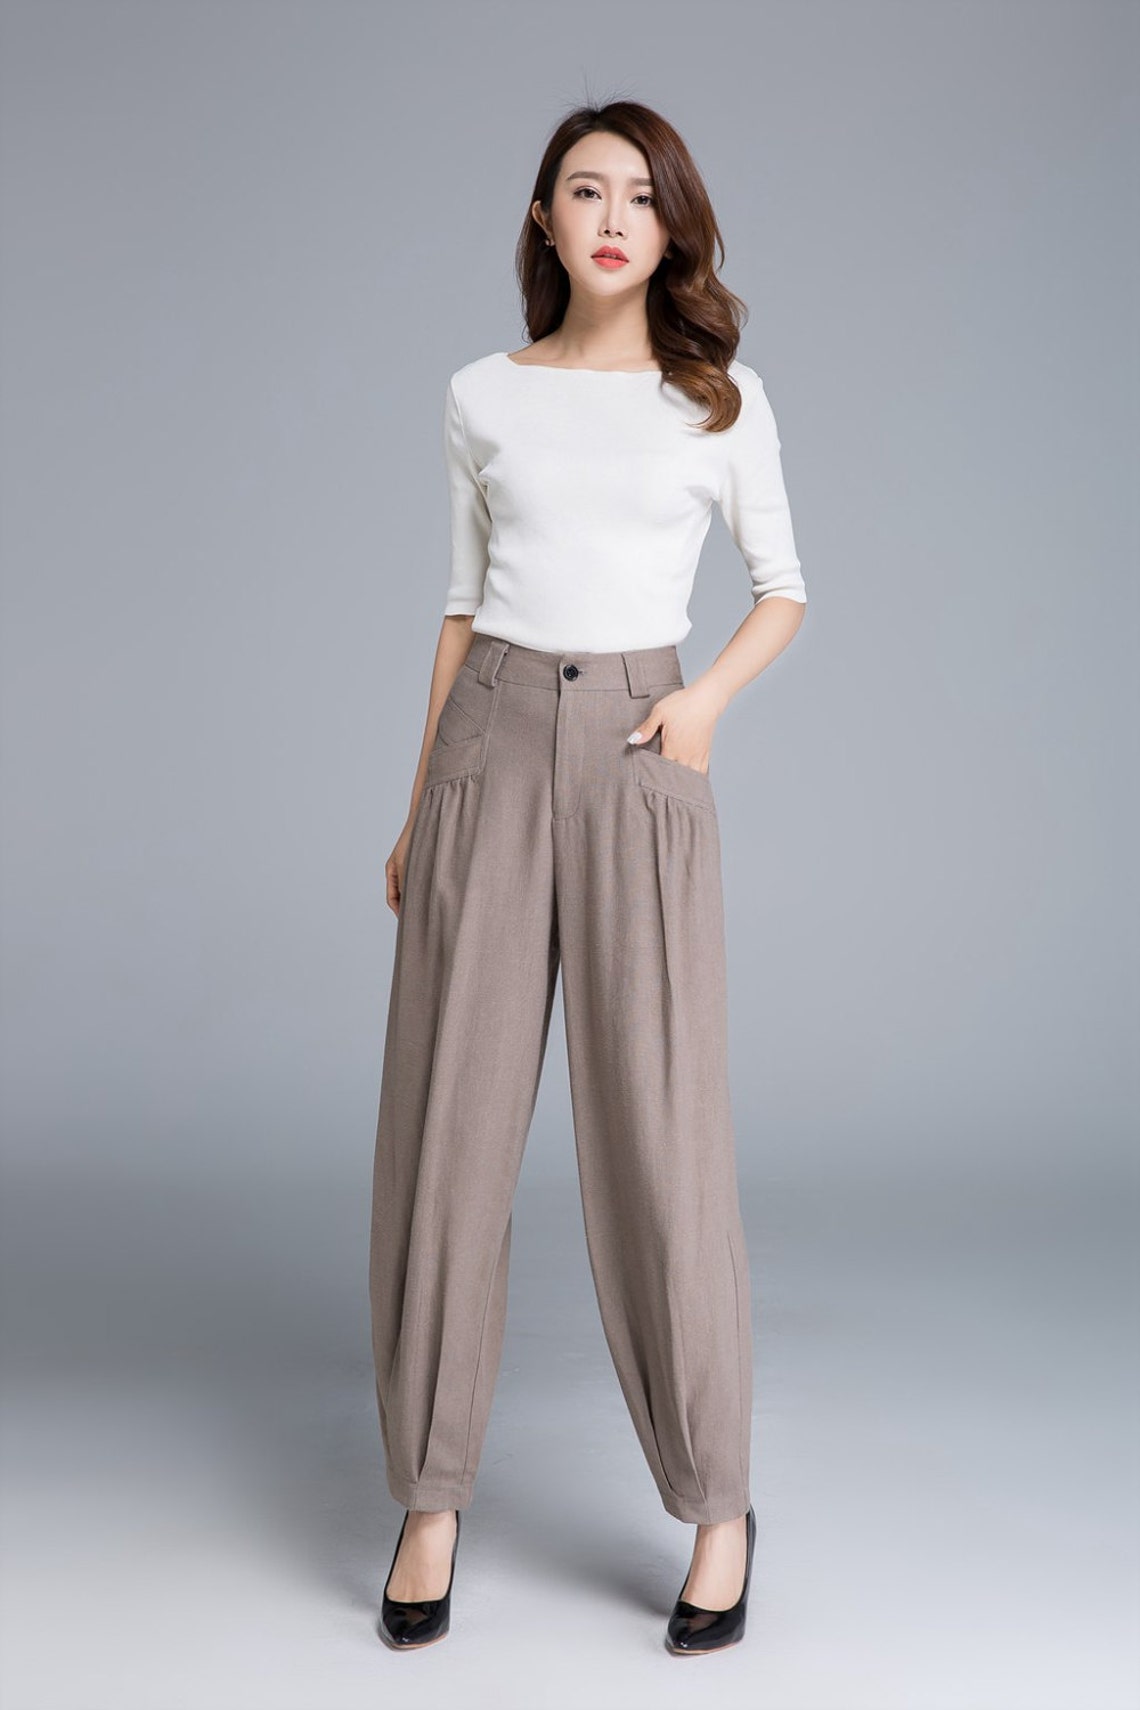 Buy Linen Casual Pants Long Linen Pants Women Linen Pants Online in ...